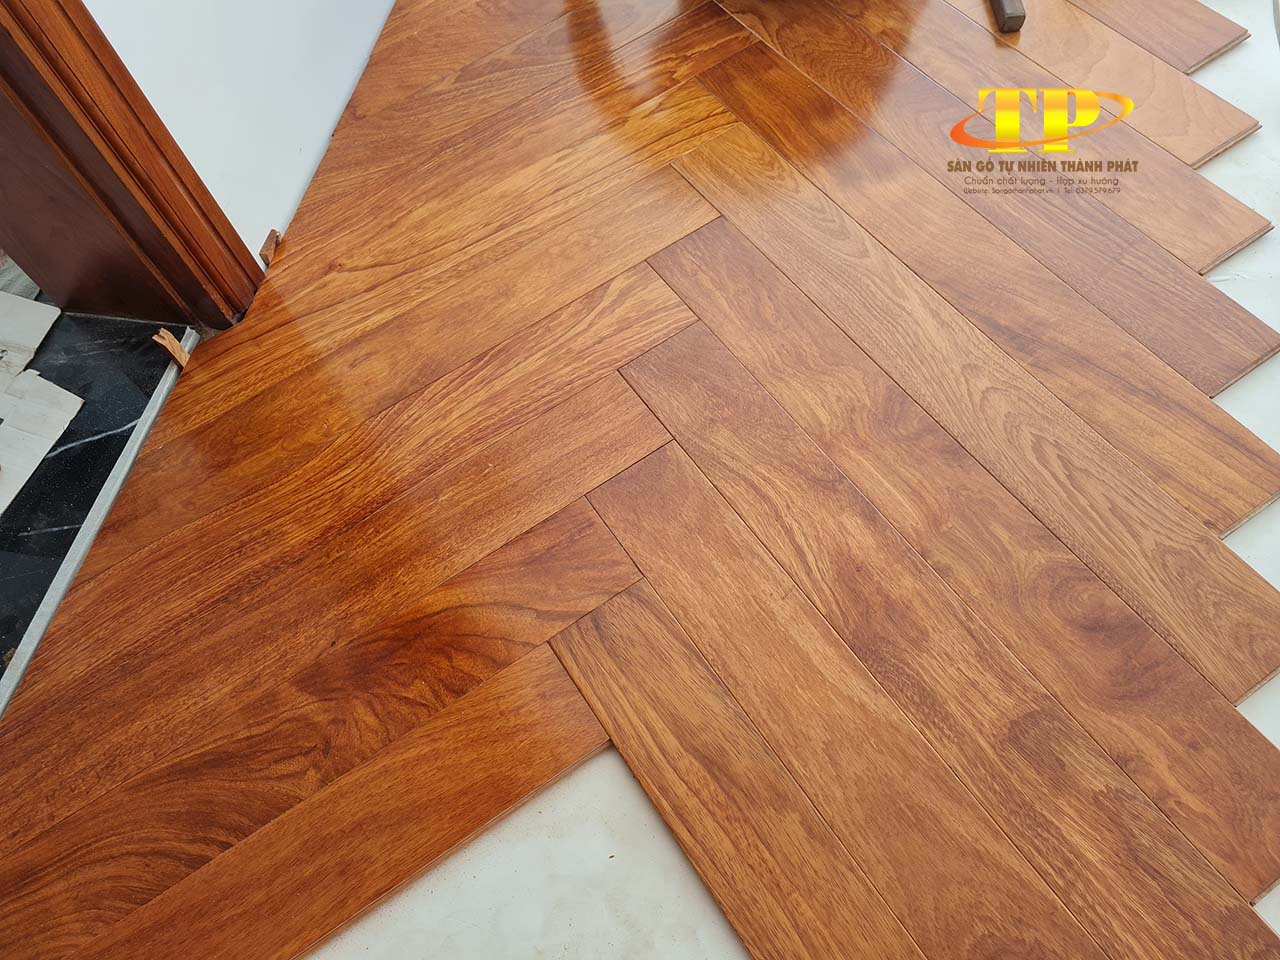 Sàn gỗ gõ đỏ là dòng sản phẩm có độ bền vững và độ thẩm mỹ cao